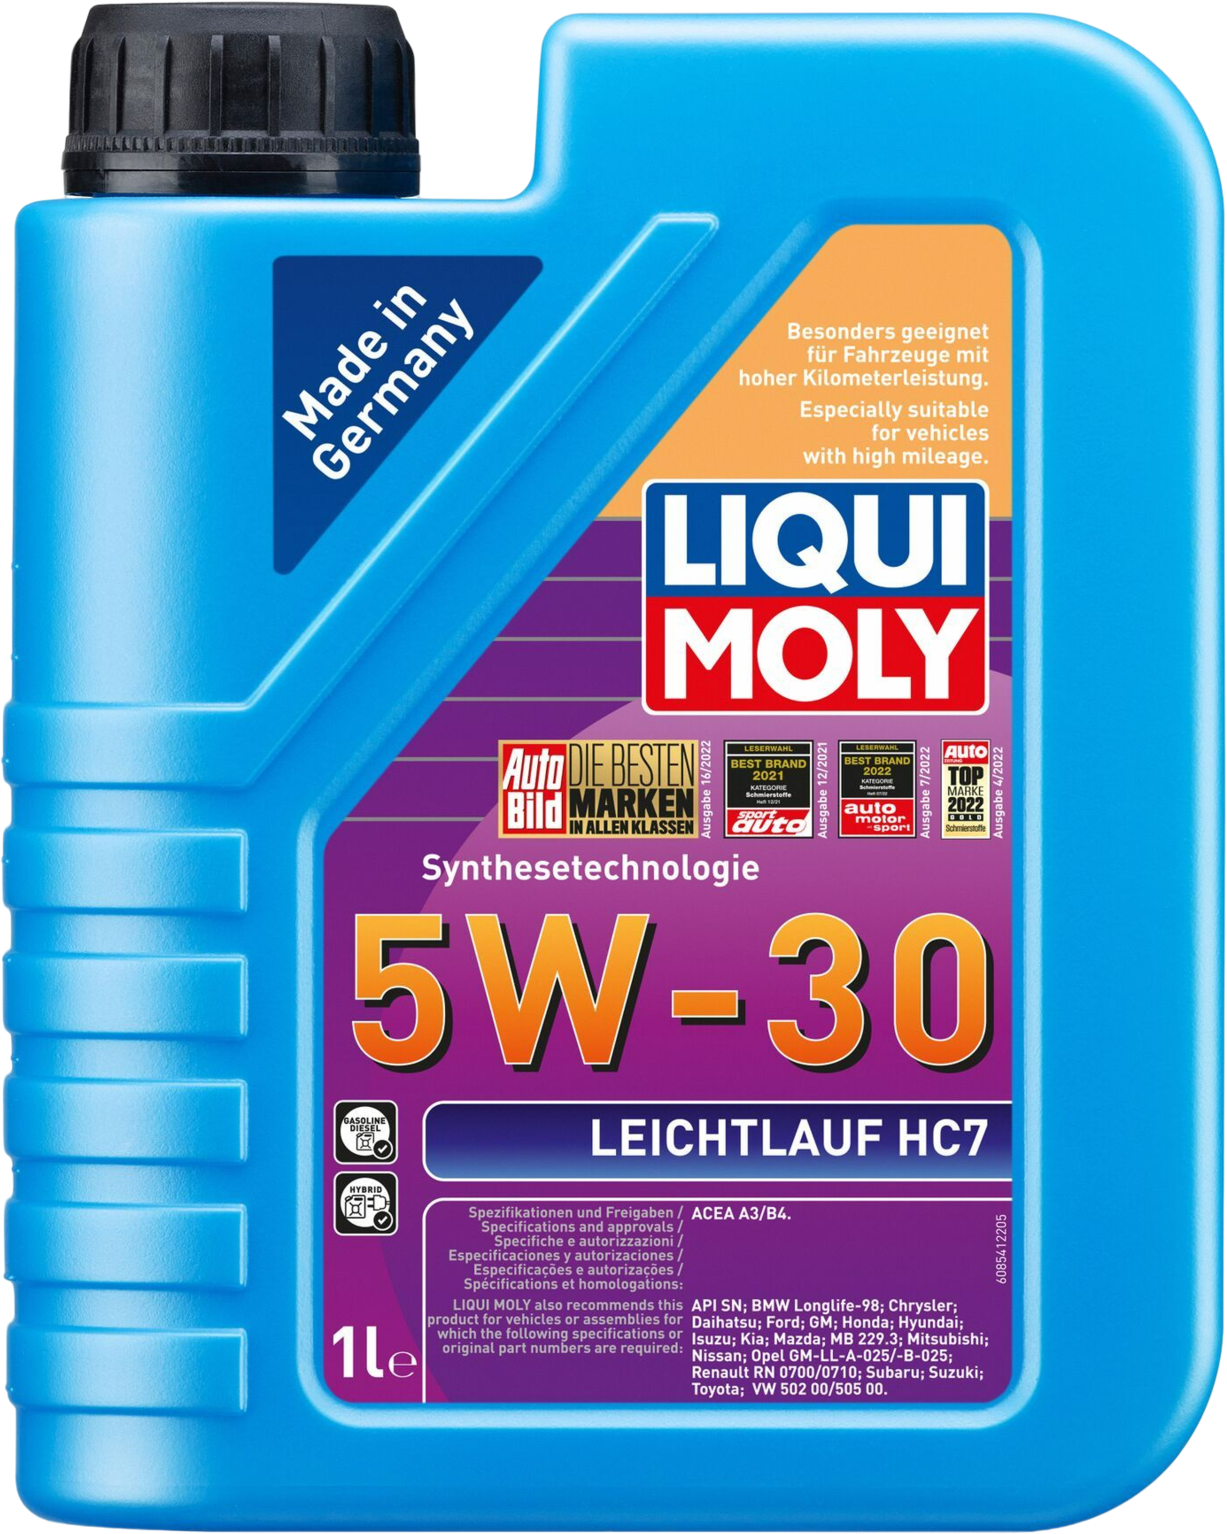 Liqui Moly Leichtlauf HC7 5W-30, 1 lt